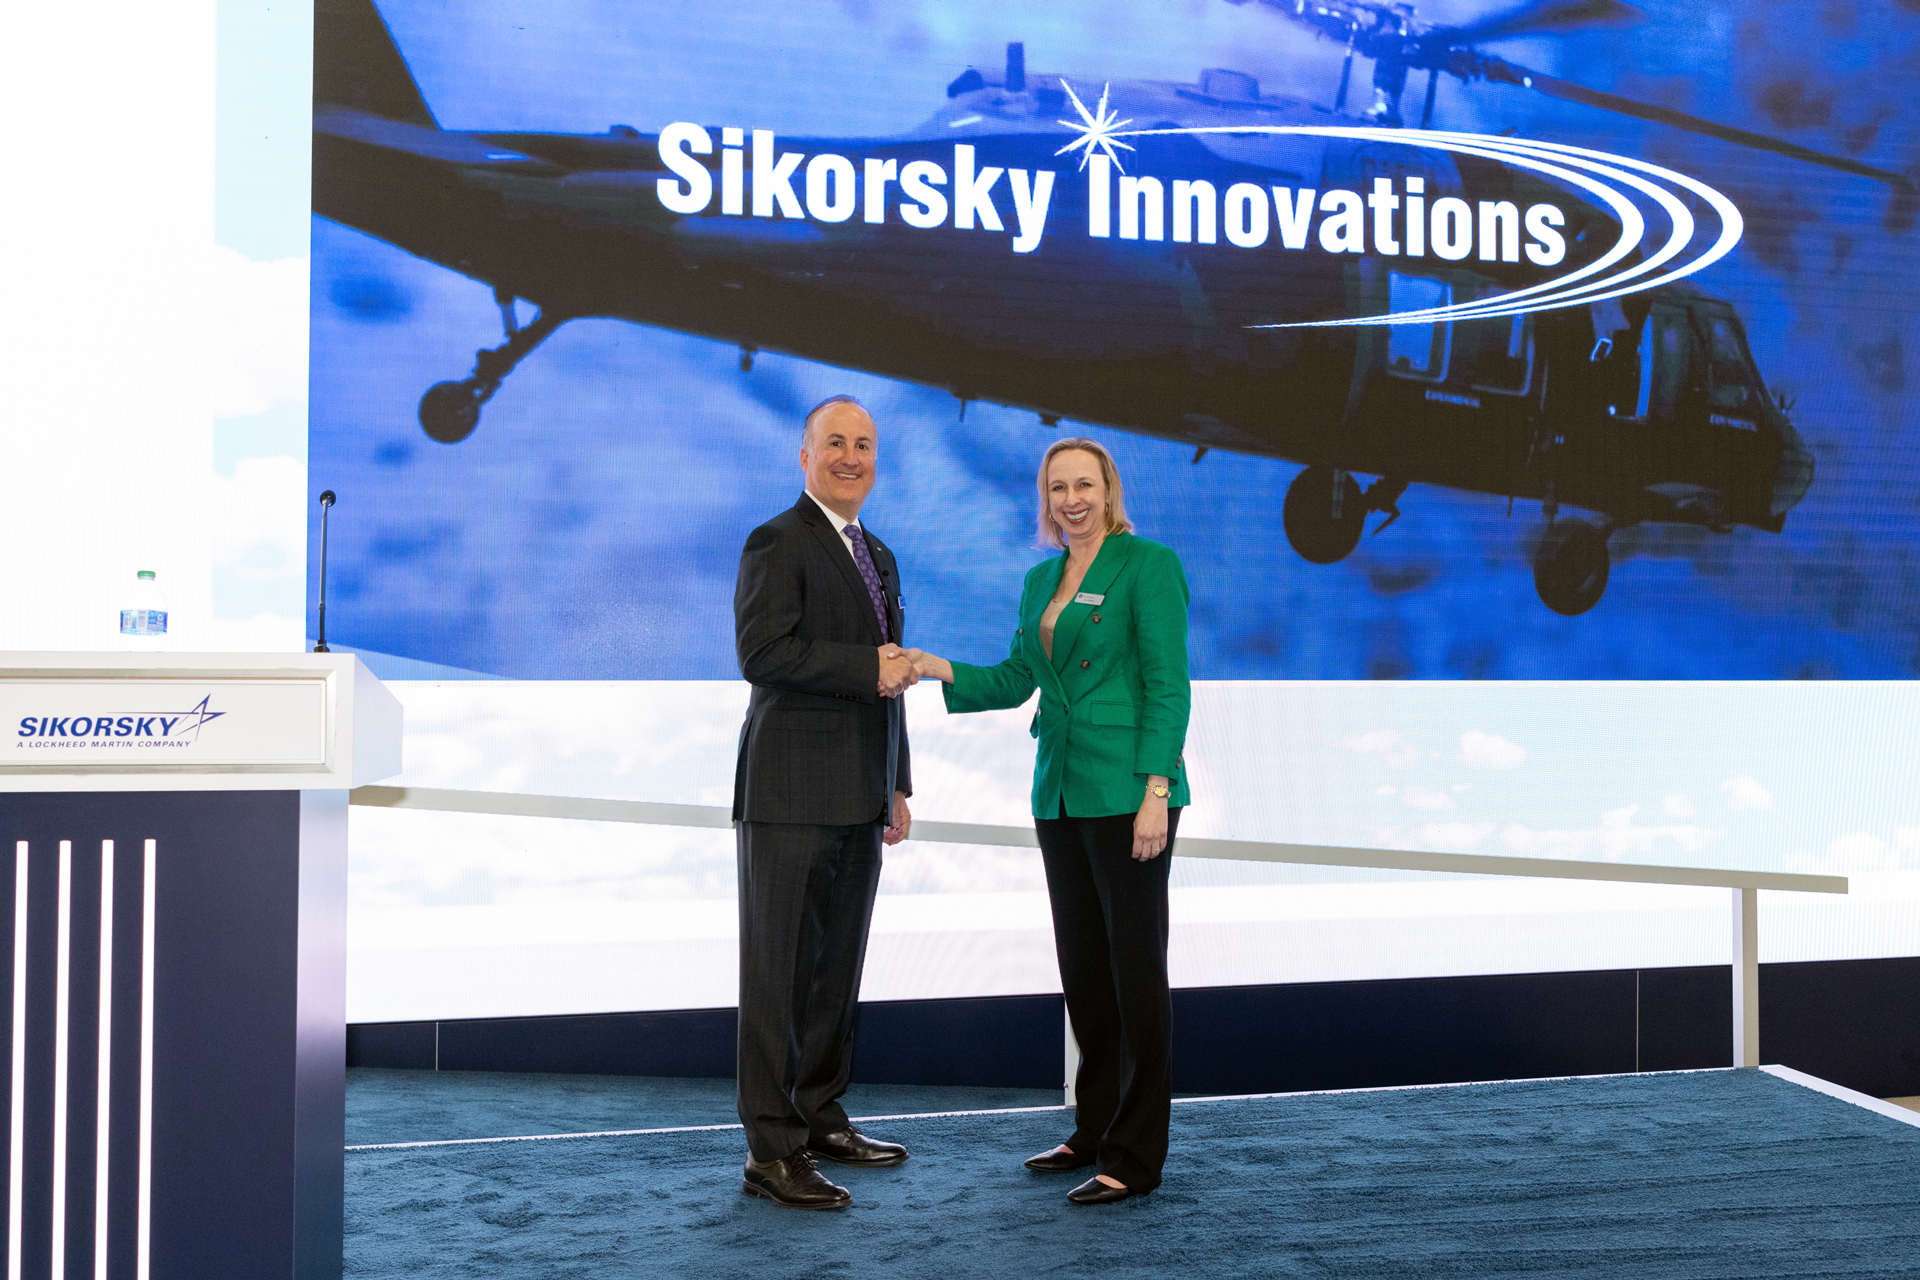 Sikorsky will ein fliegendes Shuttle mit einer Reichweite von 925 km für den Langstreckentransport entwickeln